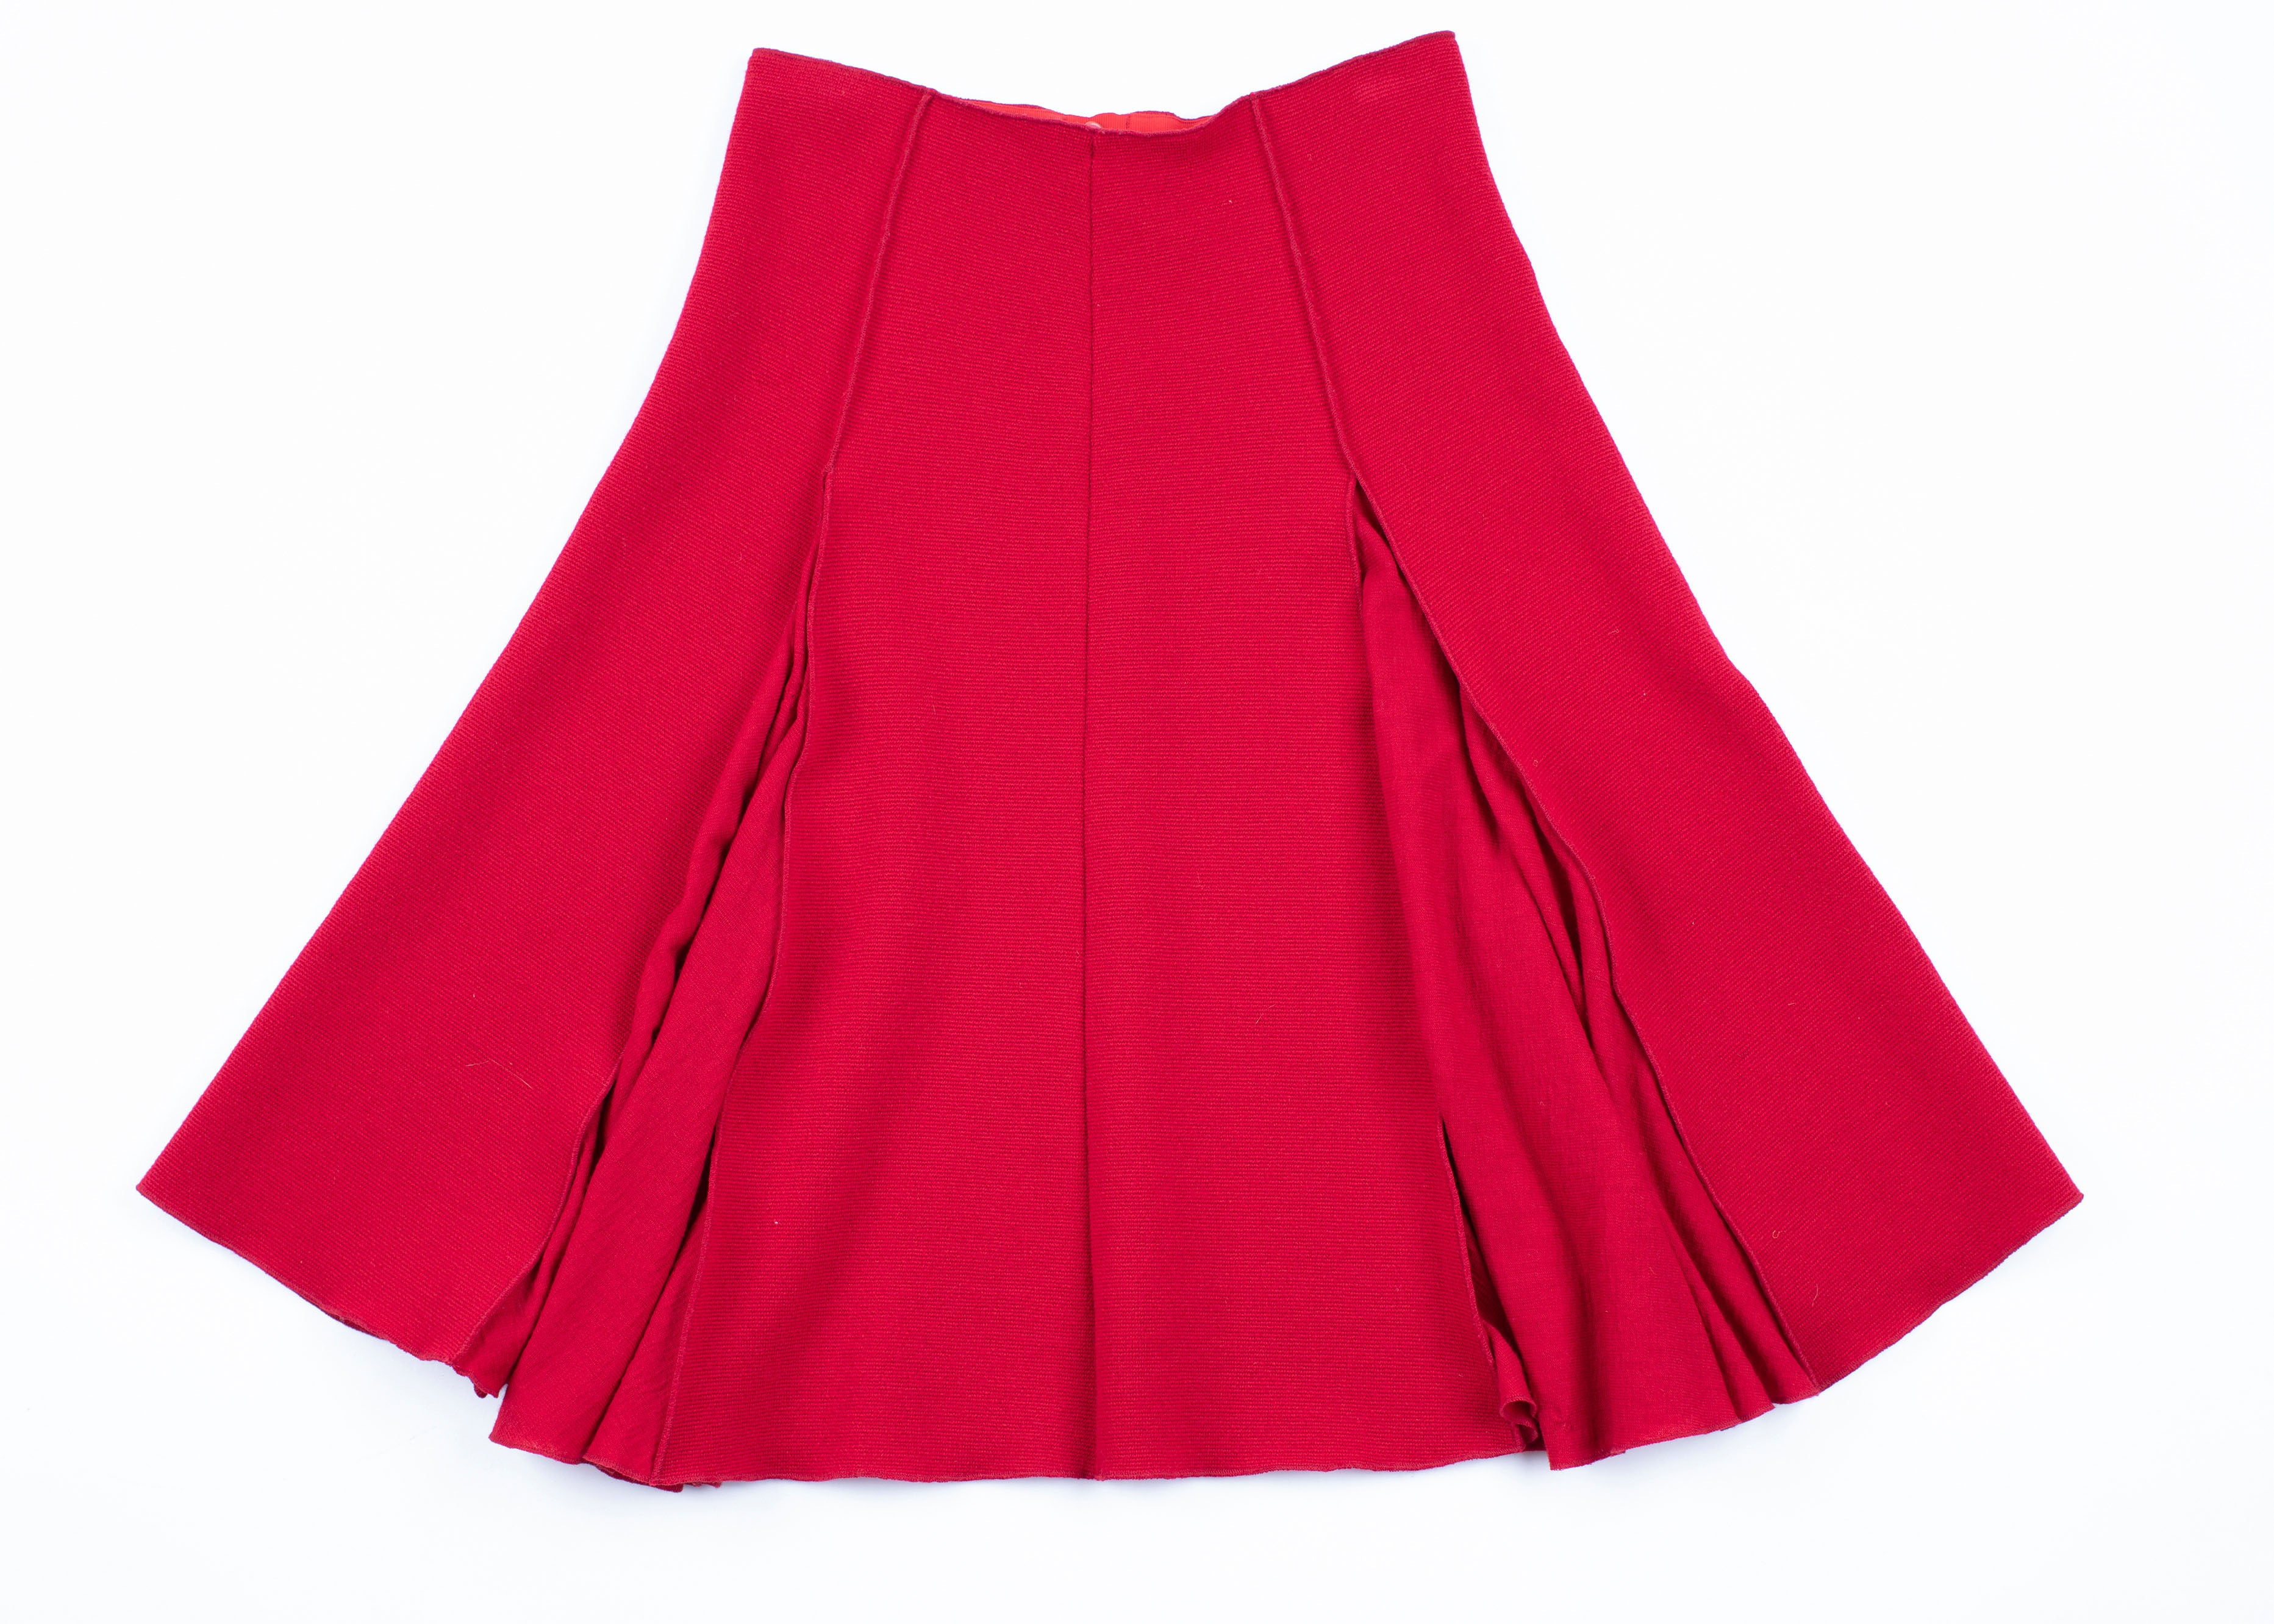 Marimekko by Ritva Falla Red Wool Blazer & Skirt Suit, SIZE S